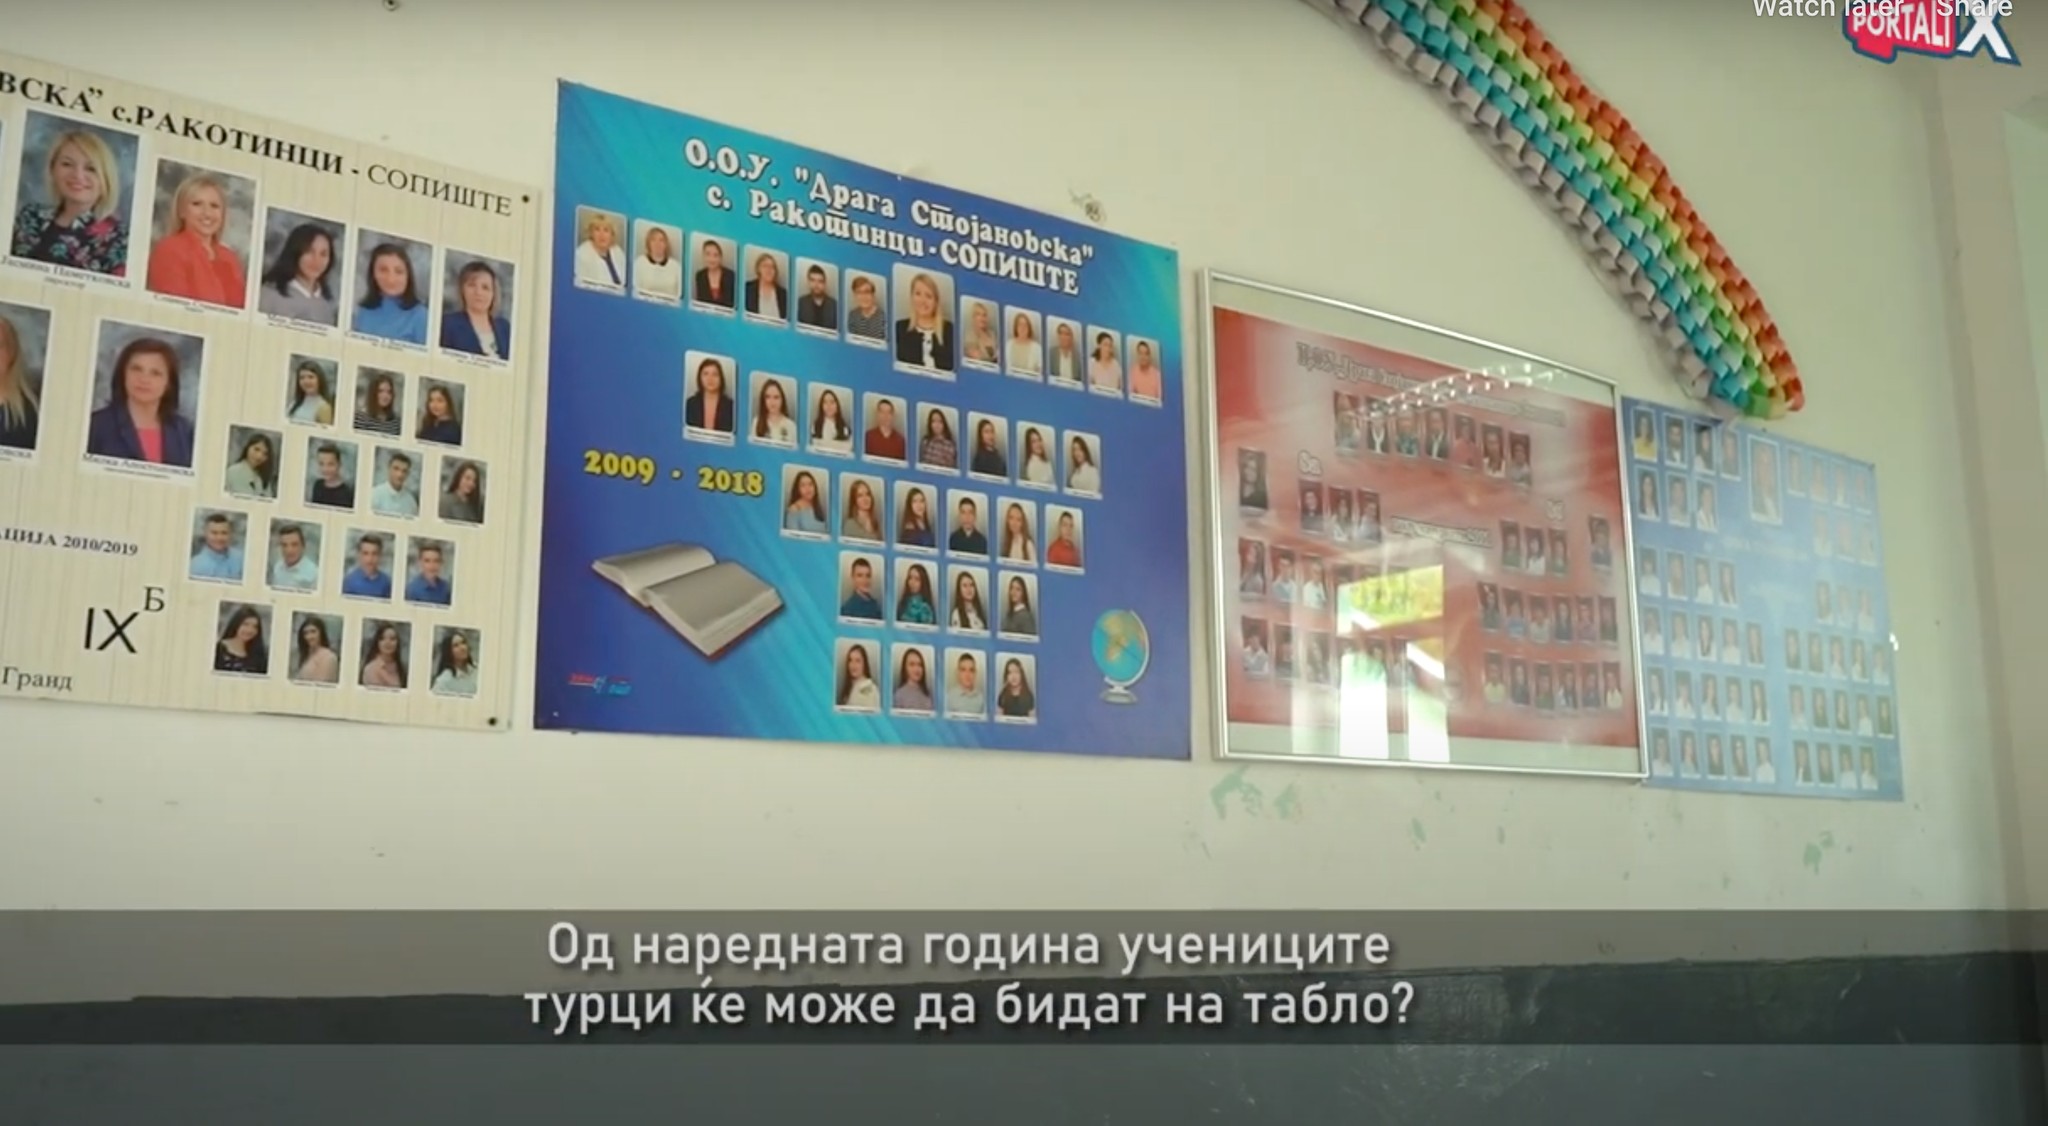 Drjilova’daki Türk öğrenciler, okul tablosunda yerini alacak